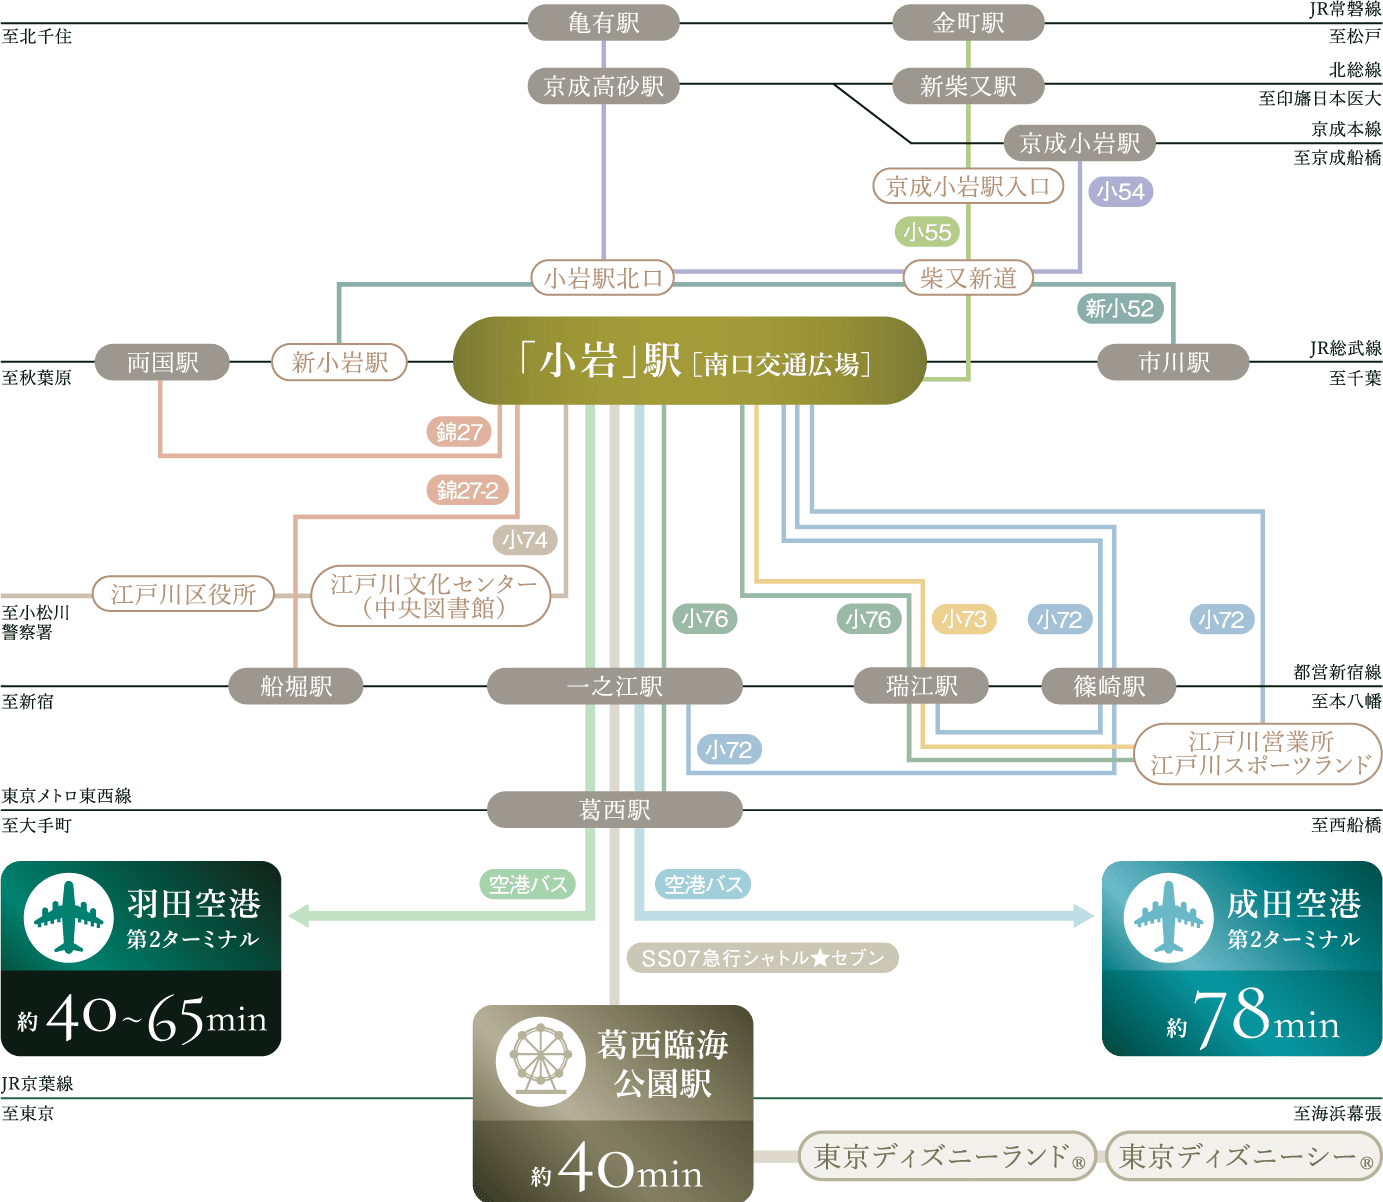 バスアクセス概念図